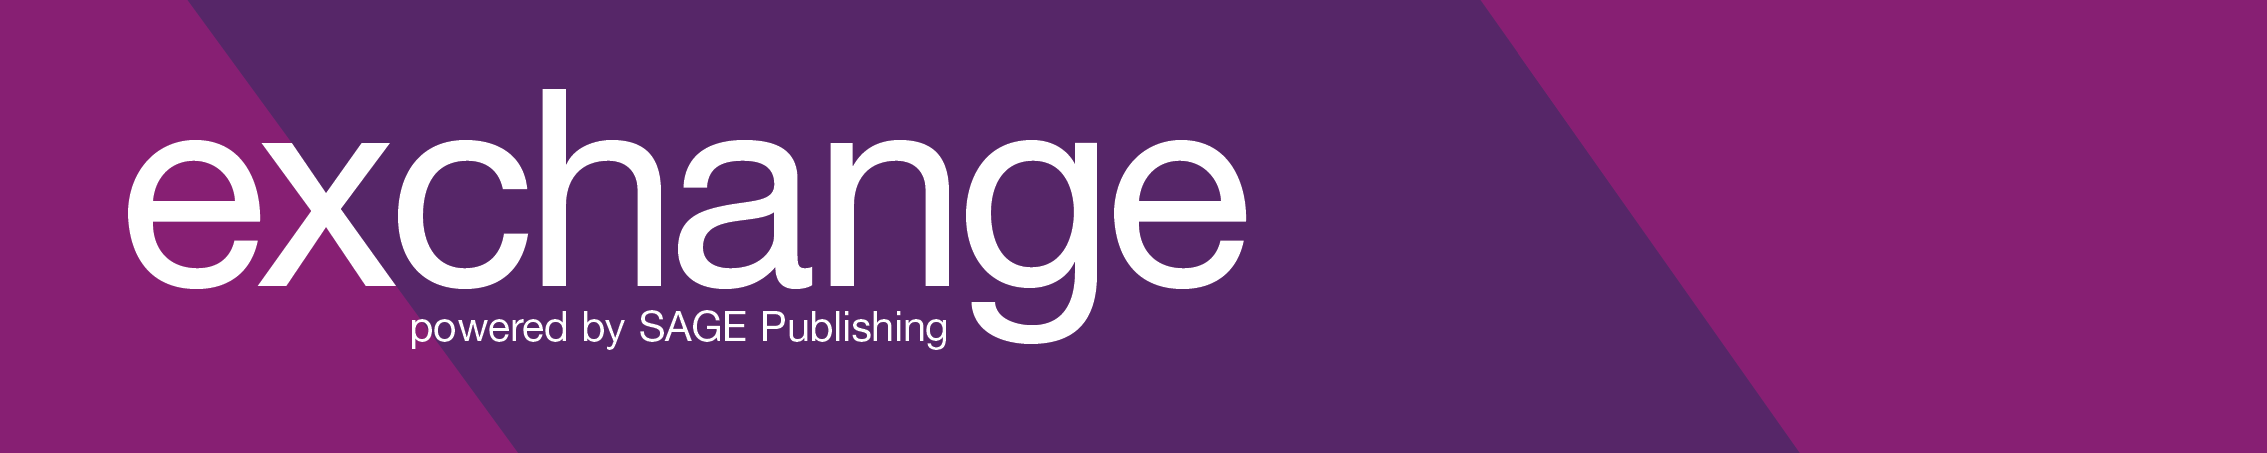 SAGE Exchange_logo